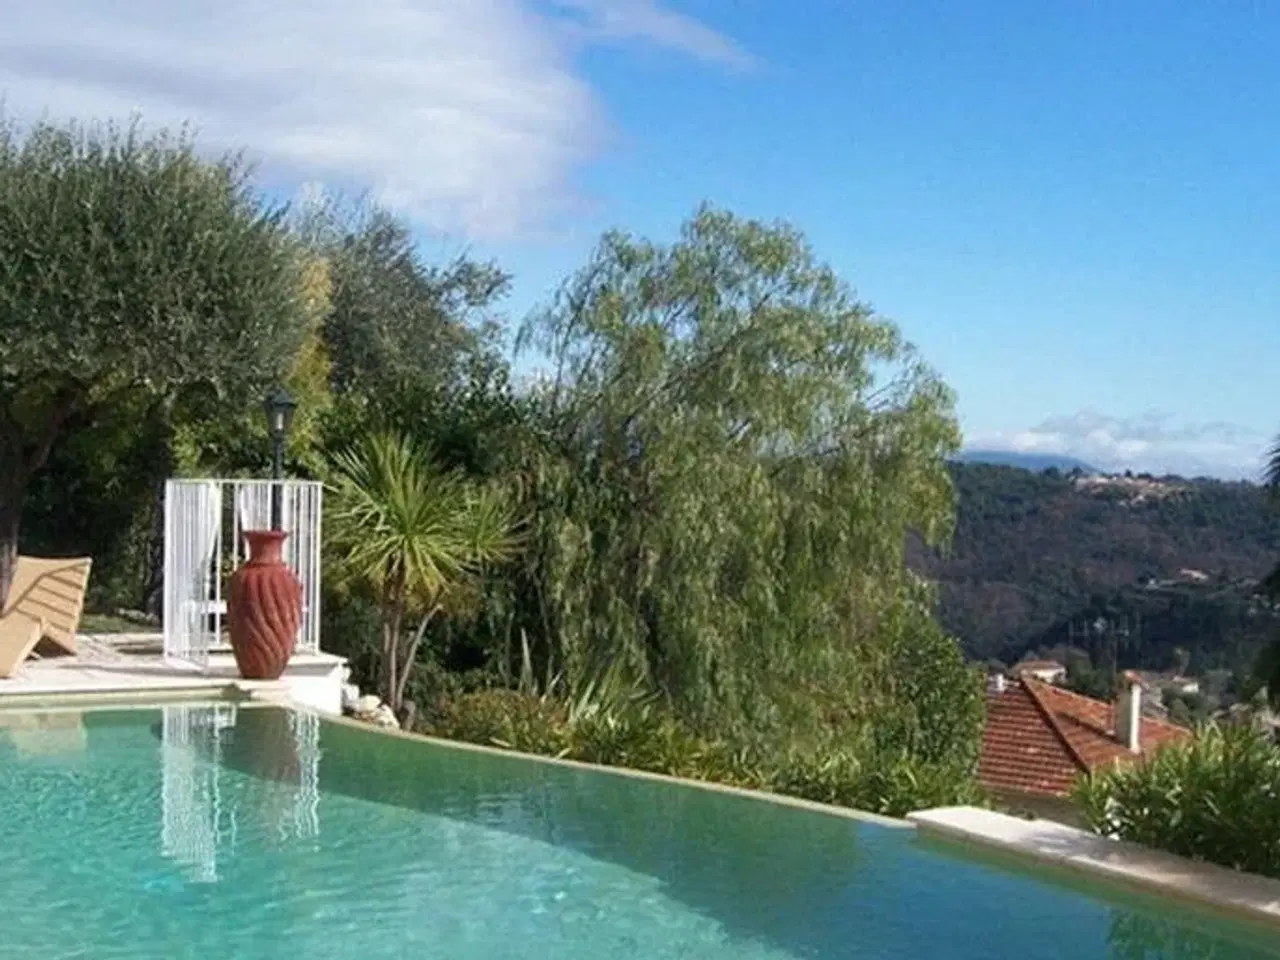 Billede 2 - Provence - Havudsigt - Pool - Vence<br>4 personer - Ugenert - Internet - Veludstyret stenhus